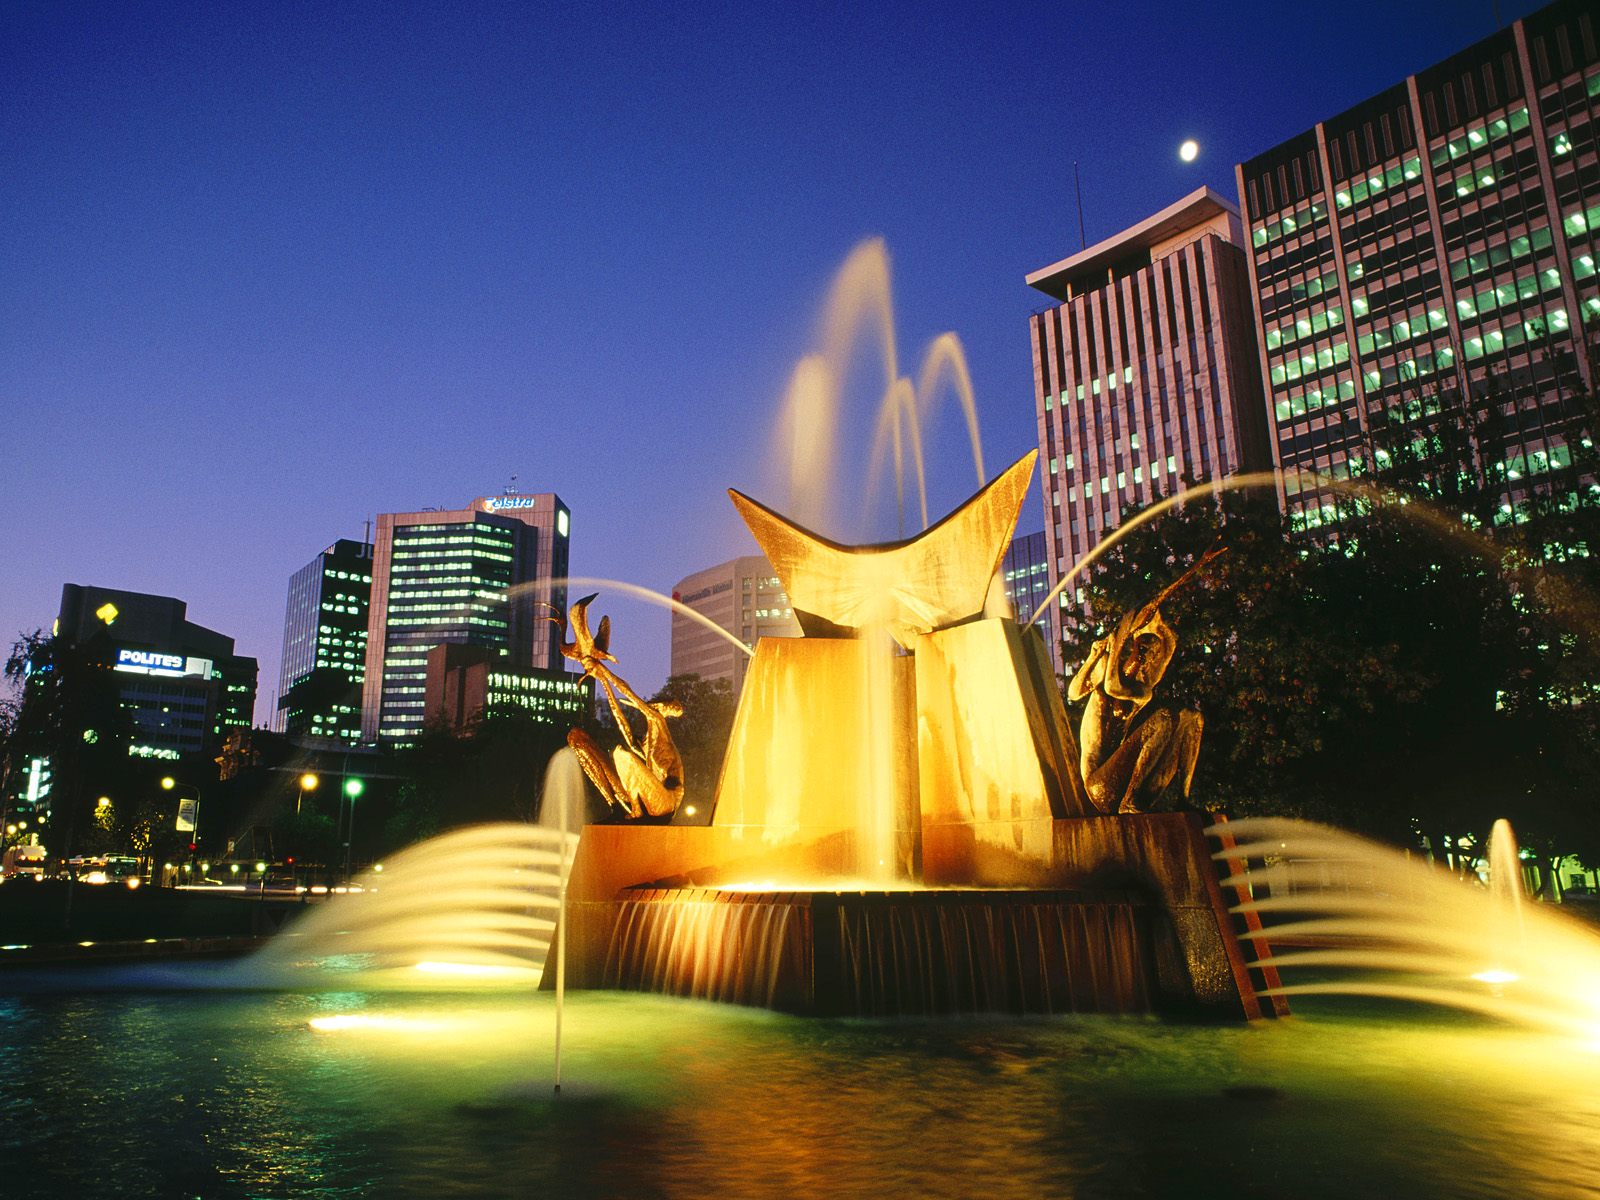 Victoria Square Fountain Adelaide Australia